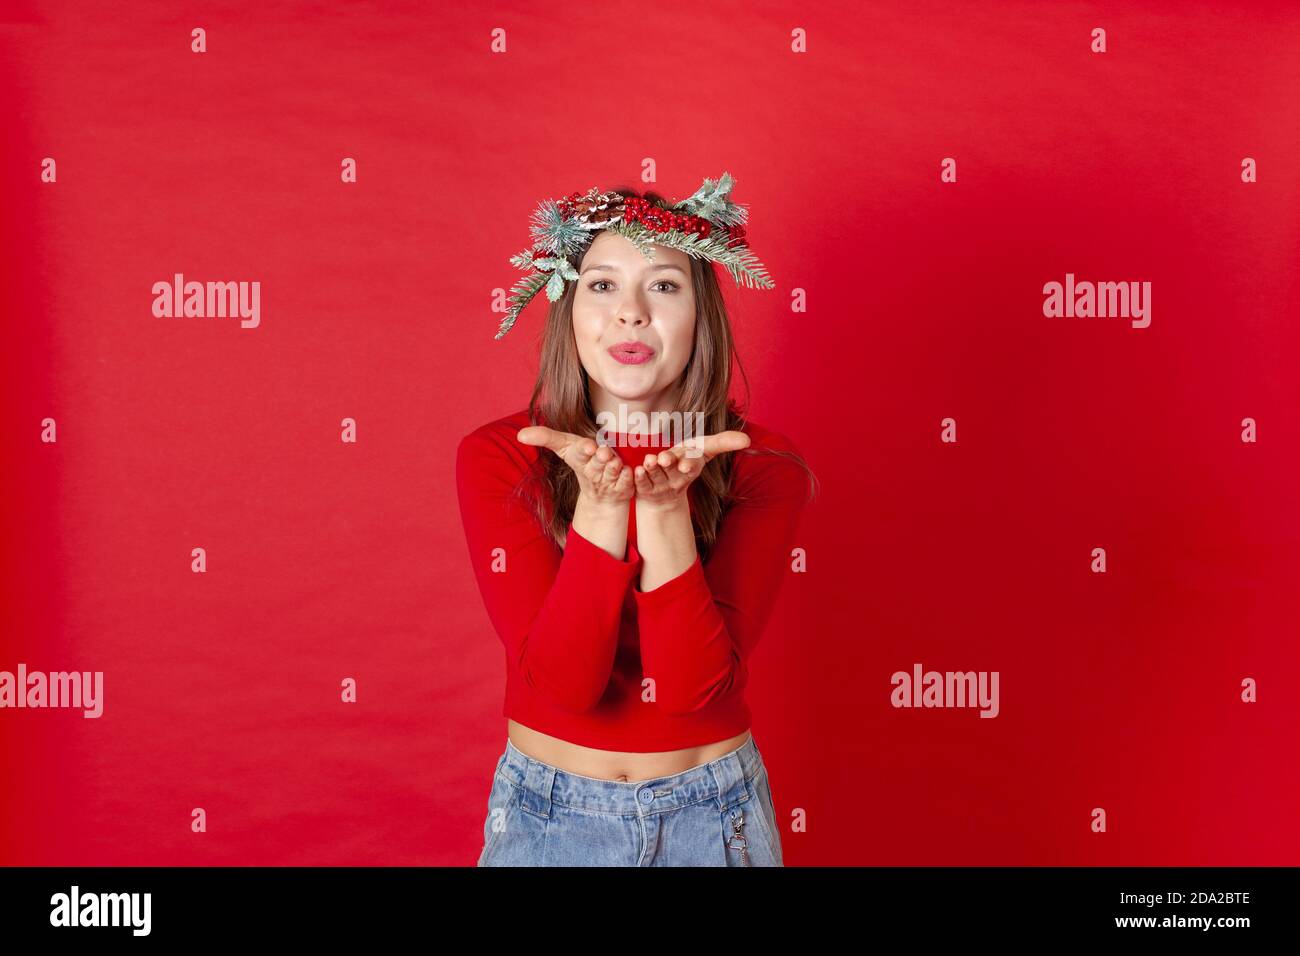 Gros plan d'une jeune femme dans une couronne de Noël, soufflant un baiser sur ses paumes, sur un fond rouge Banque D'Images